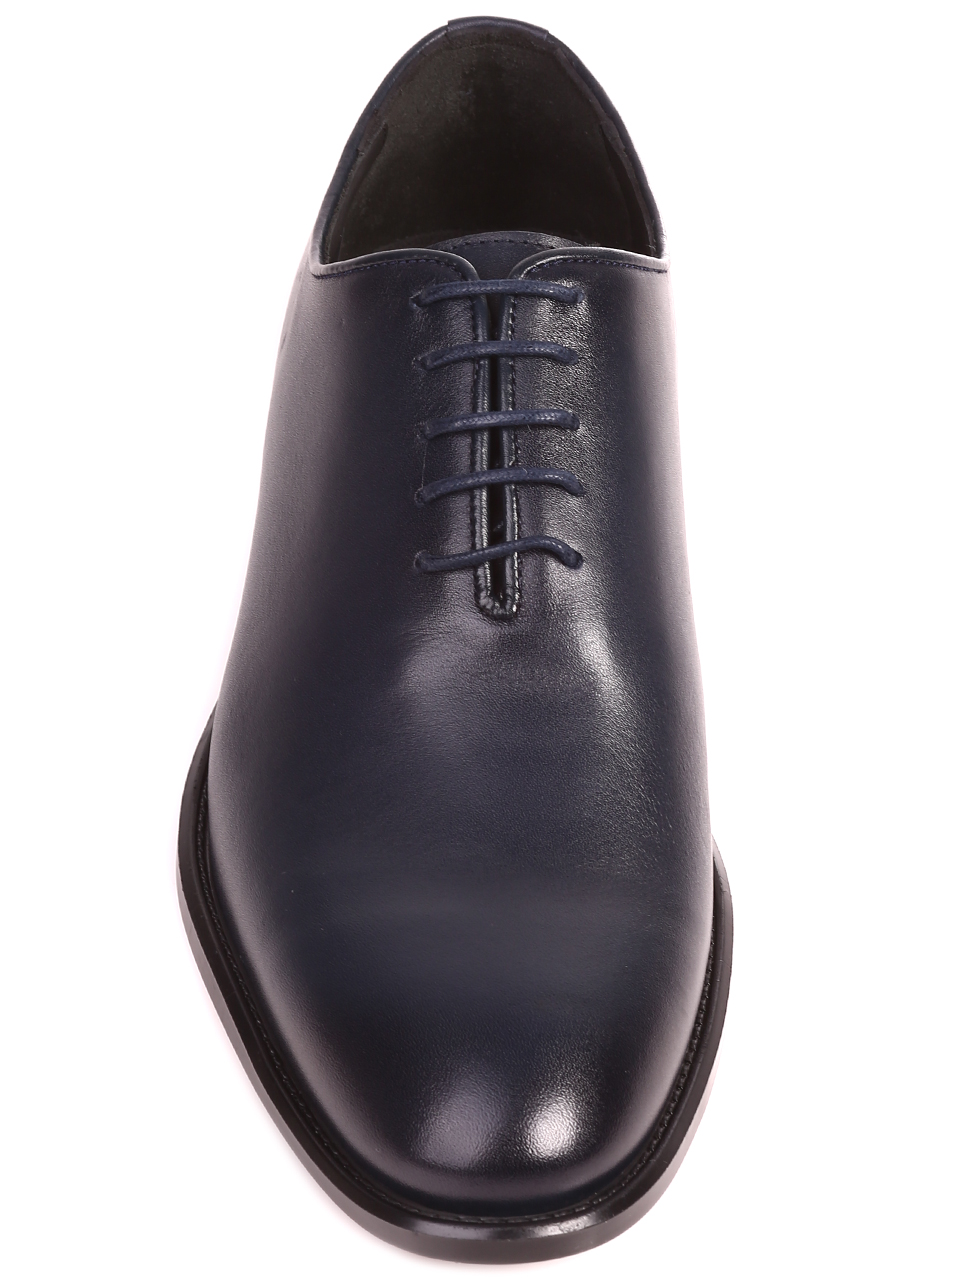 Eлегантни мъжки обувки от естествена кожа в цвят нави 153-5825 navy L-4